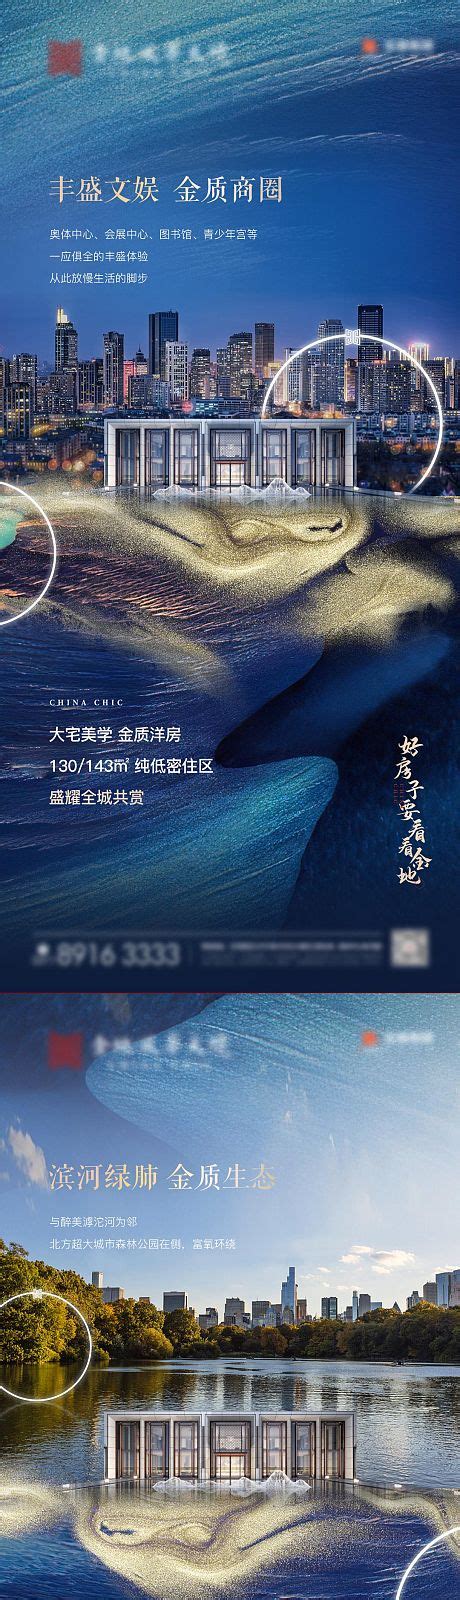 贵州旅游网网站设计案例 - 方维网络